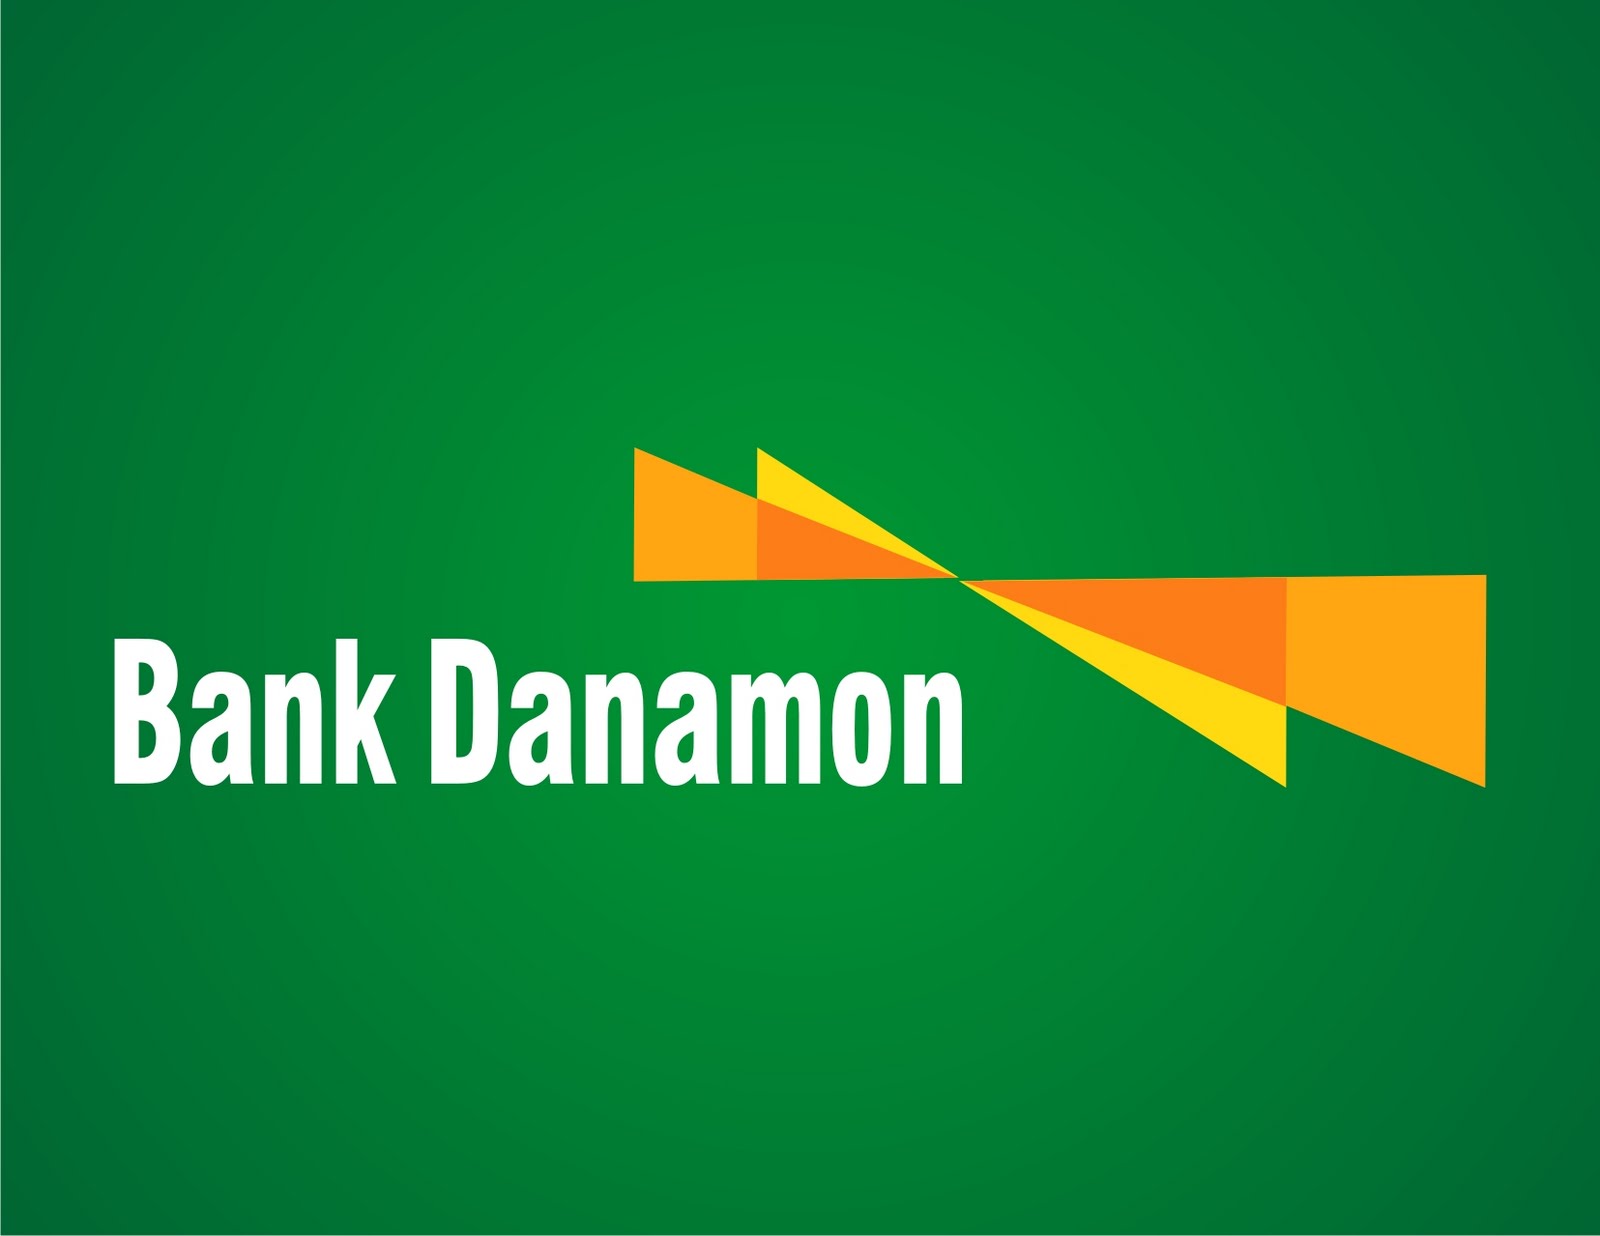 Bank Danamon « Logos & Brands Directory